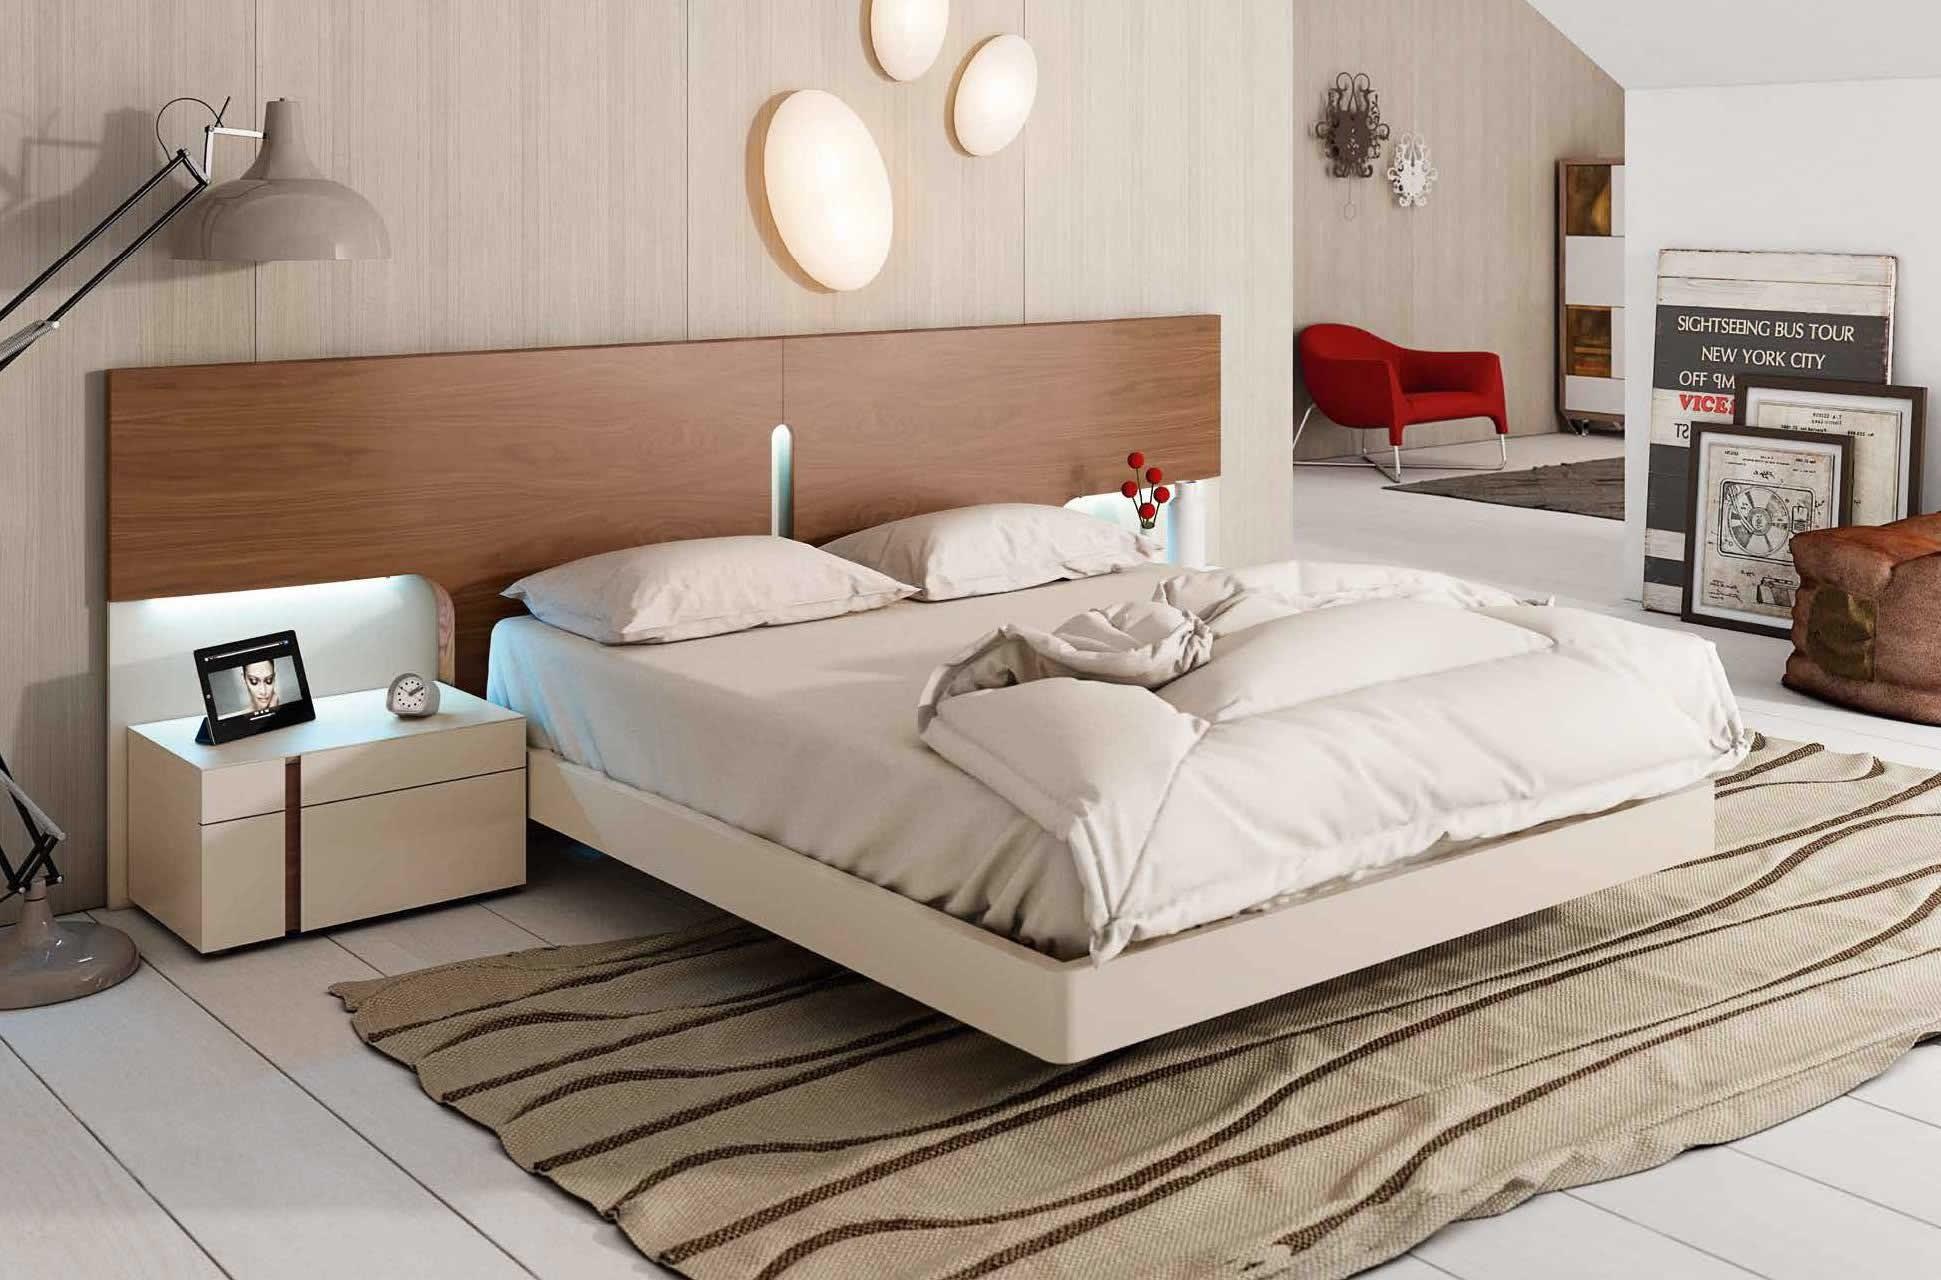 modern unique bedroom furniture